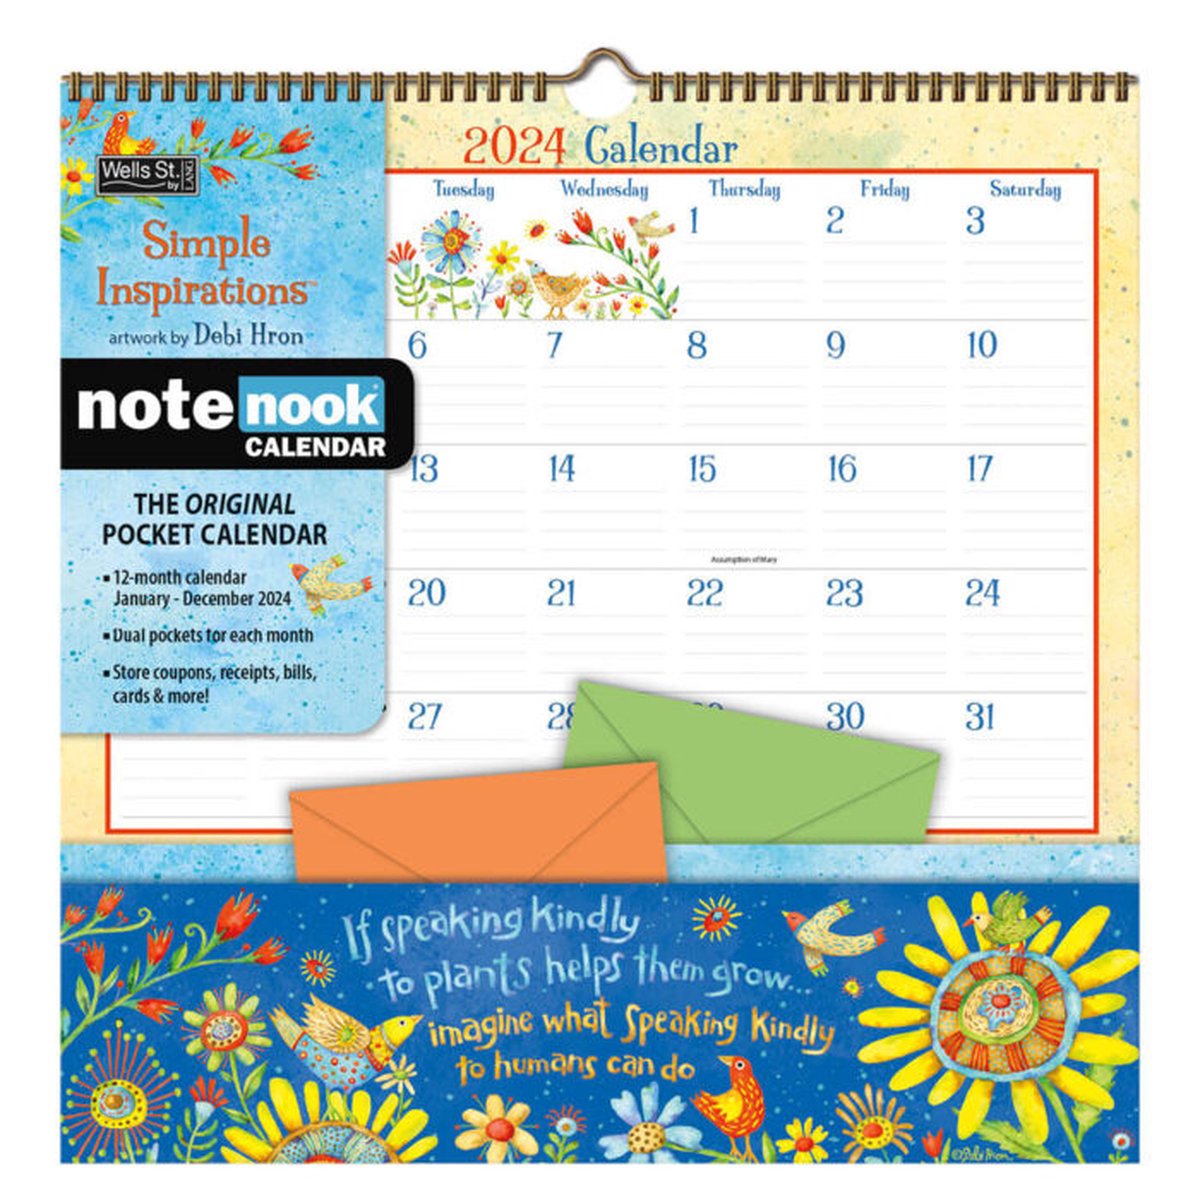 Simple Inspirations Pocket Note Nook Kalender 2024